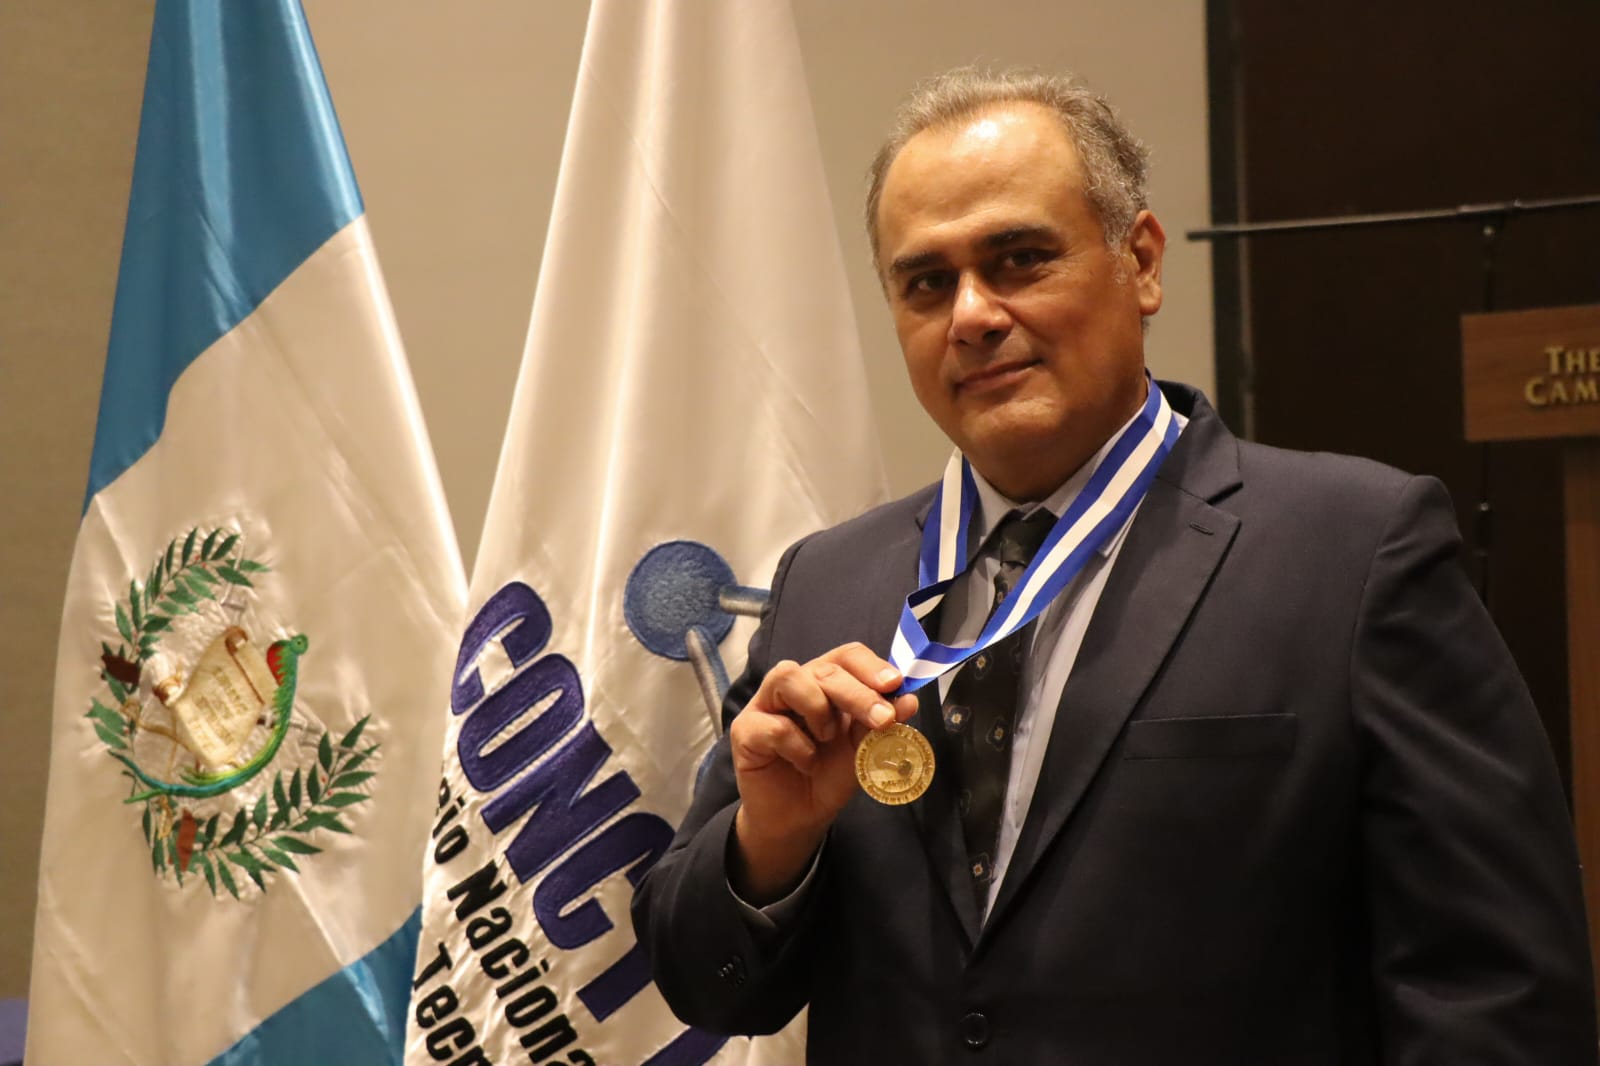 حصل الدكتور خوان فرانسيسكو بيريز سابينو على ميدالية العلوم والتكنولوجيا لعام 2020